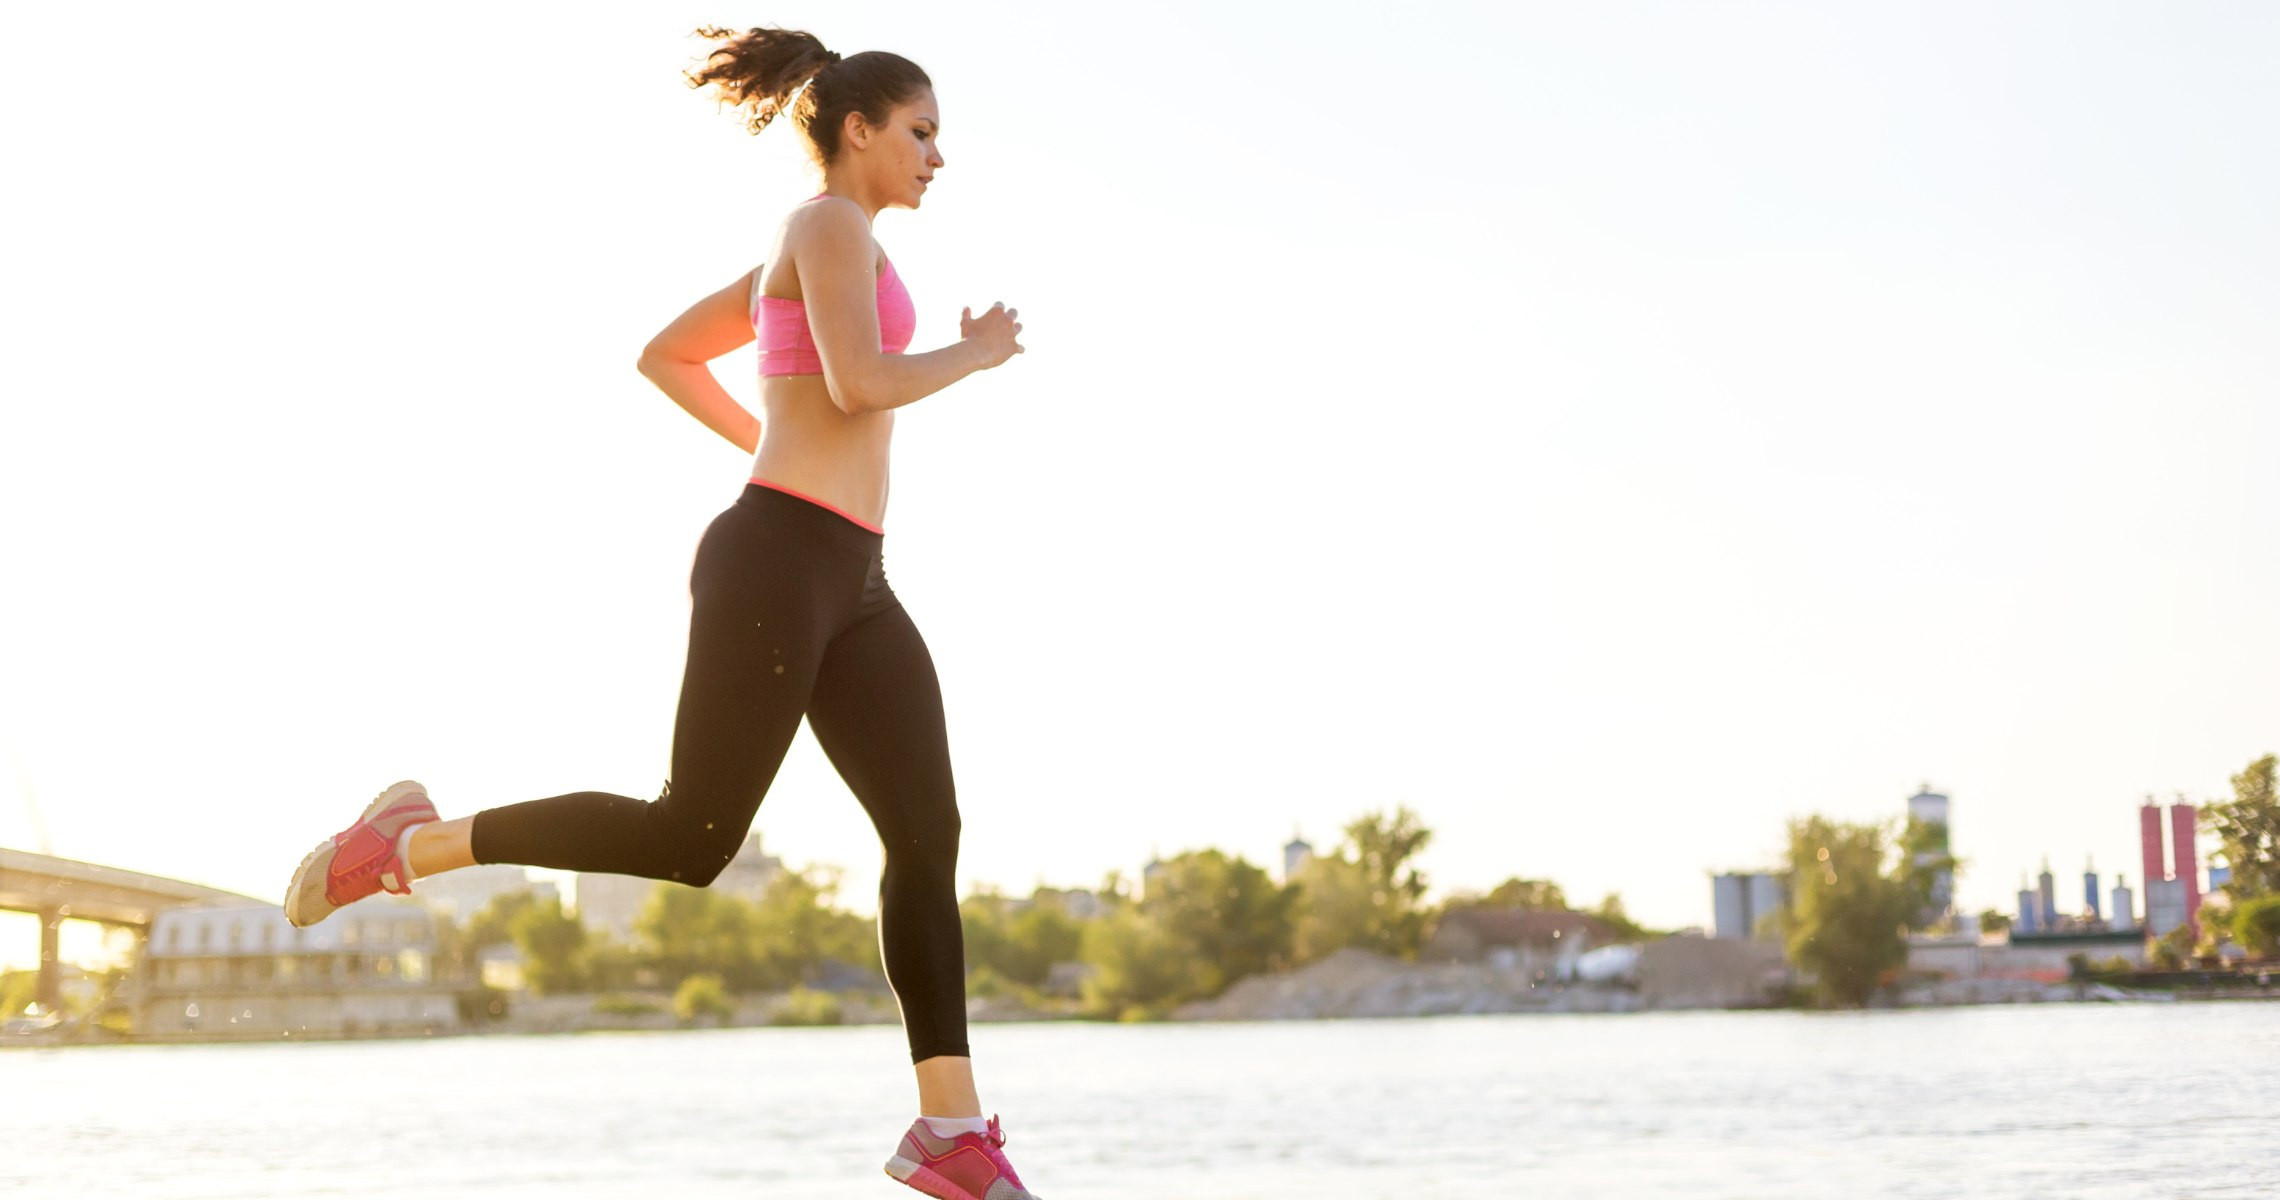 Lượng calo tiêu hao khi chạy bộ là bao nhiêu?